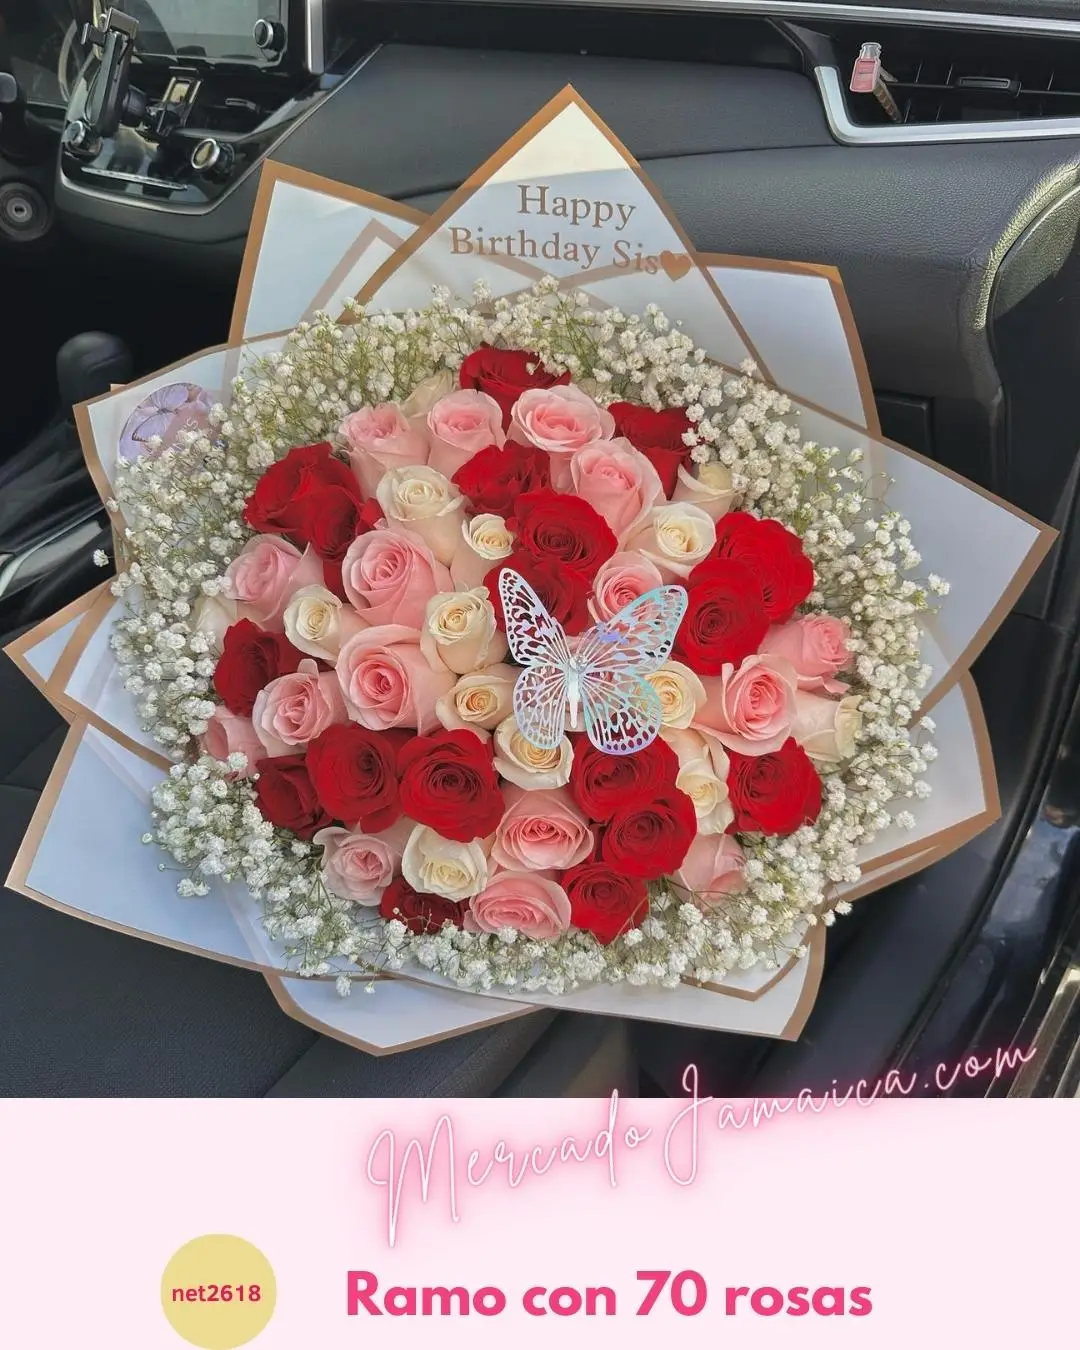 Ramo con rosas de amor y gratitud sincera: un regalo que representa un amor agradecido y sincero